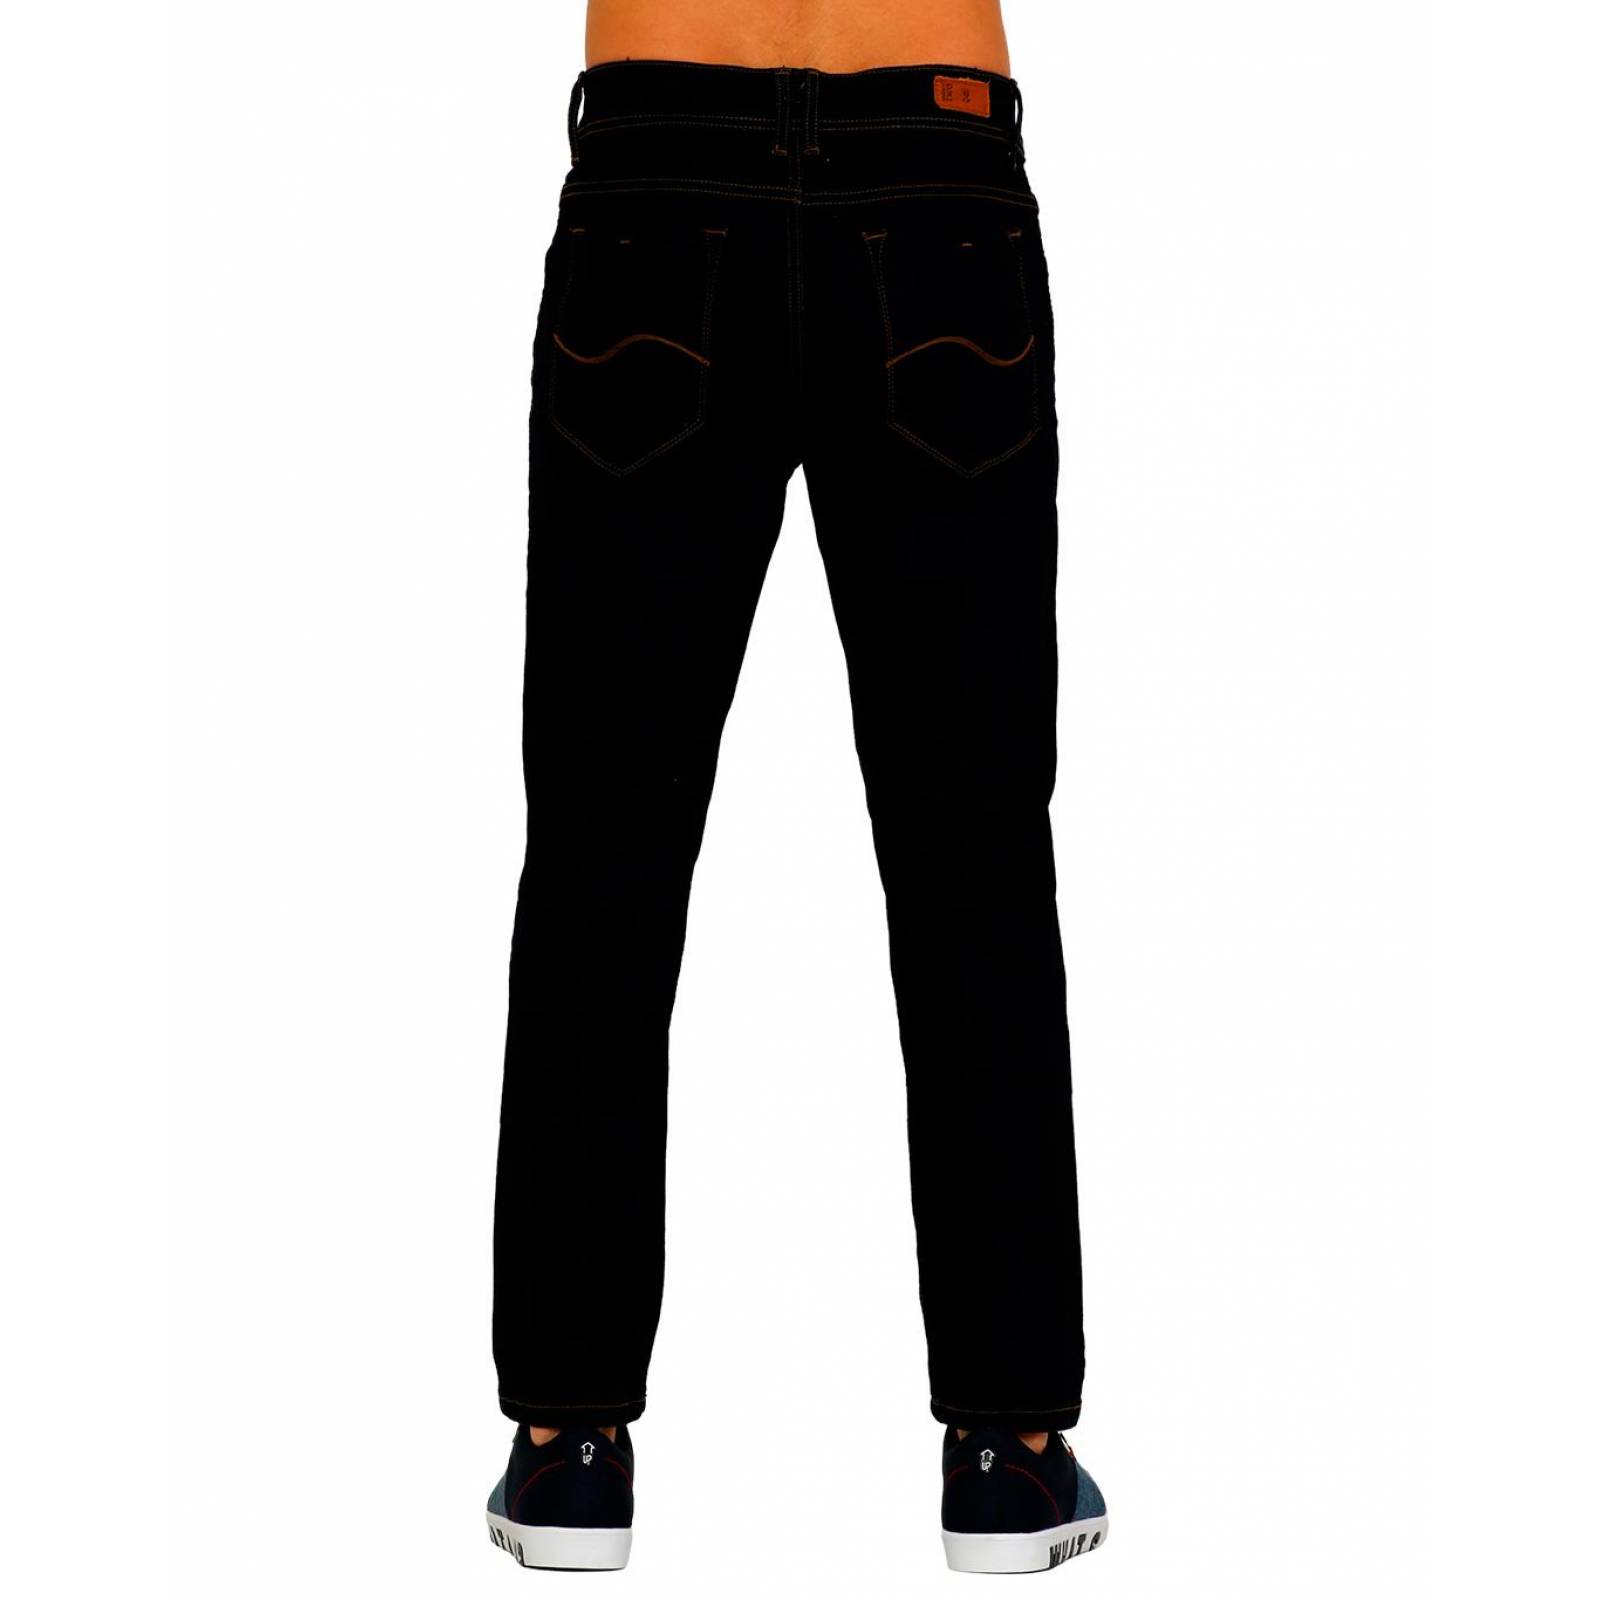 Jeans Básico Hombre Salvaje Tentación Indigo 71803129 Mezclilla Stretch 